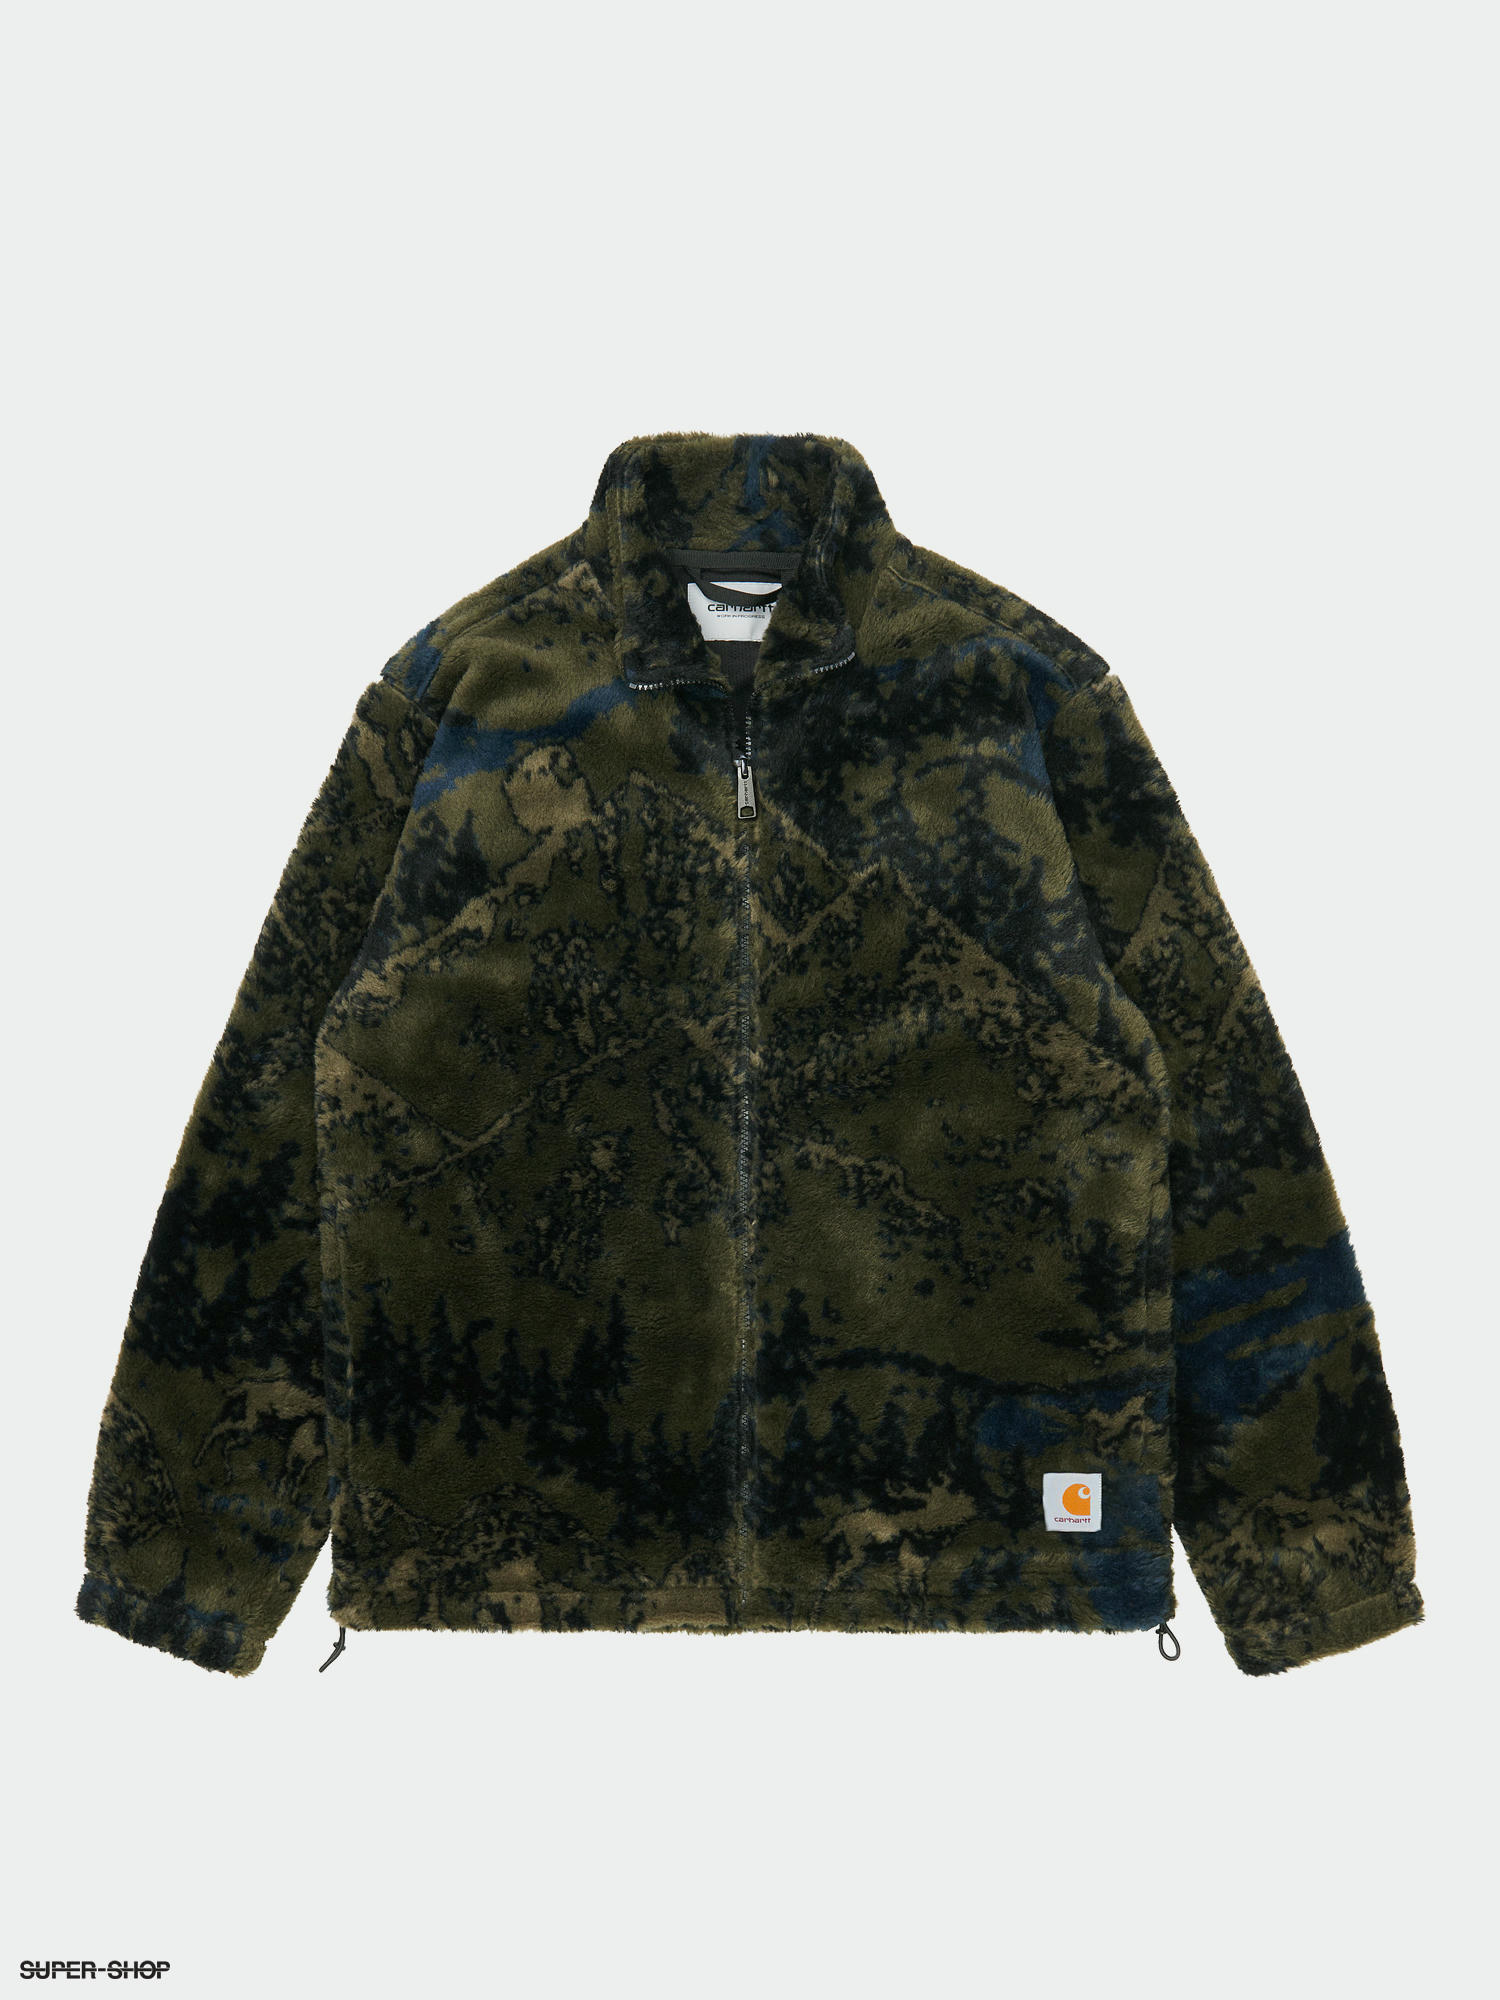 Carhartt WIP High Plains Liner Fleece Jacket Jacquard/Cypress